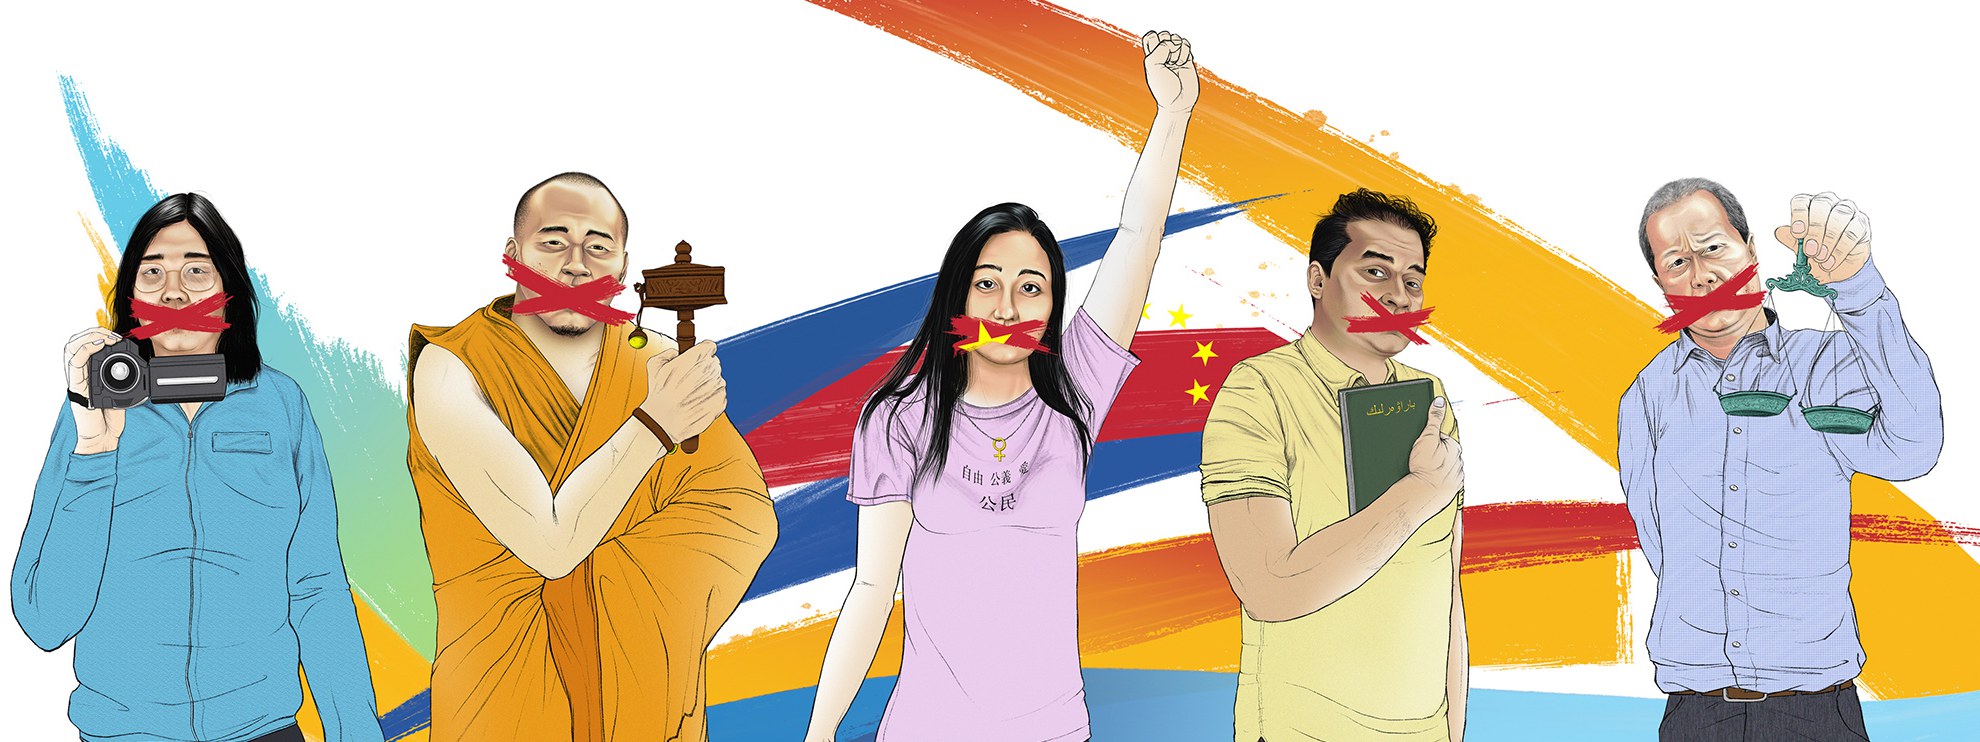 Zhang Zhan, Rinchen Tsultrin, Li Qiaochu, Ilham Tohti et Gao Zhisheng sont poursuivis pour avoir exprimé leur opinion. © Adrien Stanziani